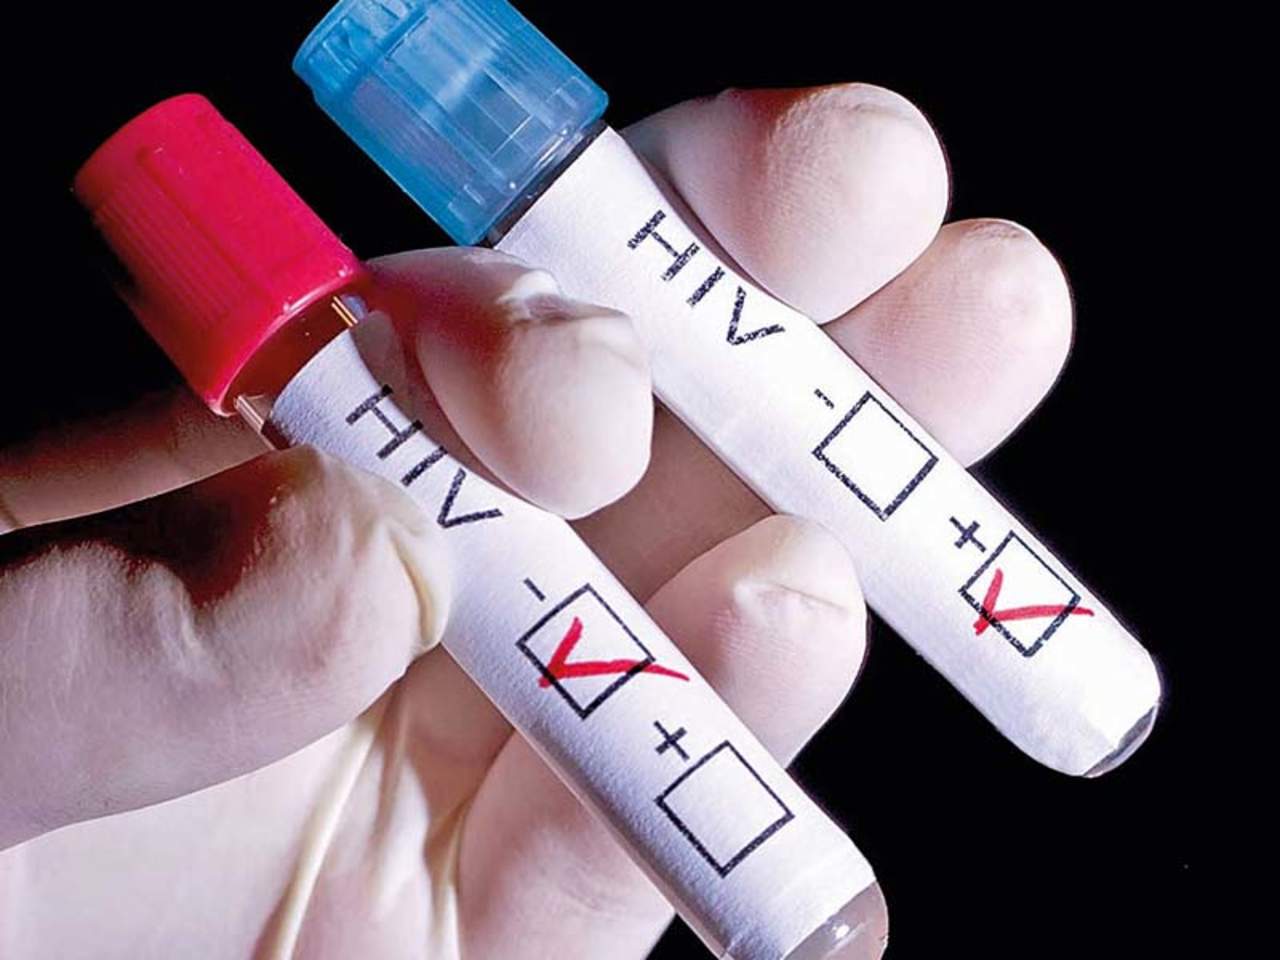 Una variante del VIH, más virulenta y con más riesgo de transmisión, ha estado circulando las últimas décadas en Países Bajos, aunque tras iniciar el tratamiento los afectados tienen una supervivencia similar al resto de enfermos, según un estudio que publica Science. (ESPECIAL) 